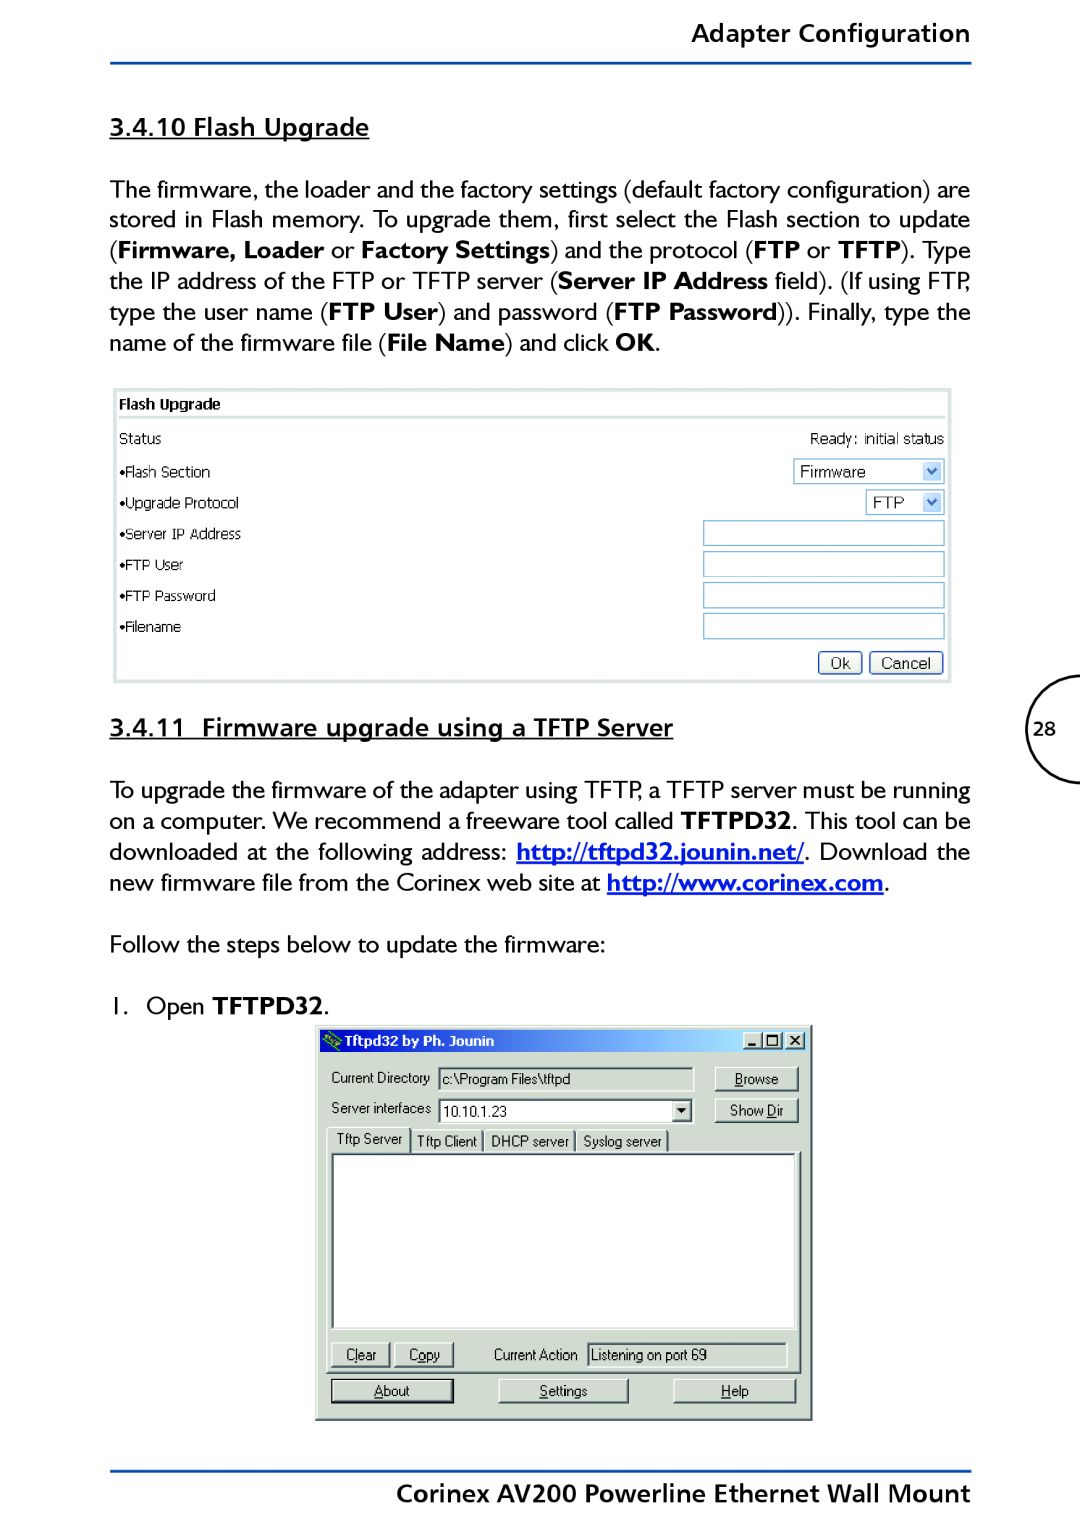 DeWalt AV200 manual Adapter Configuration 3.4.10 Flash Upgrade, Firmware upgrade using a TFTP Server, Open TFTPD32 